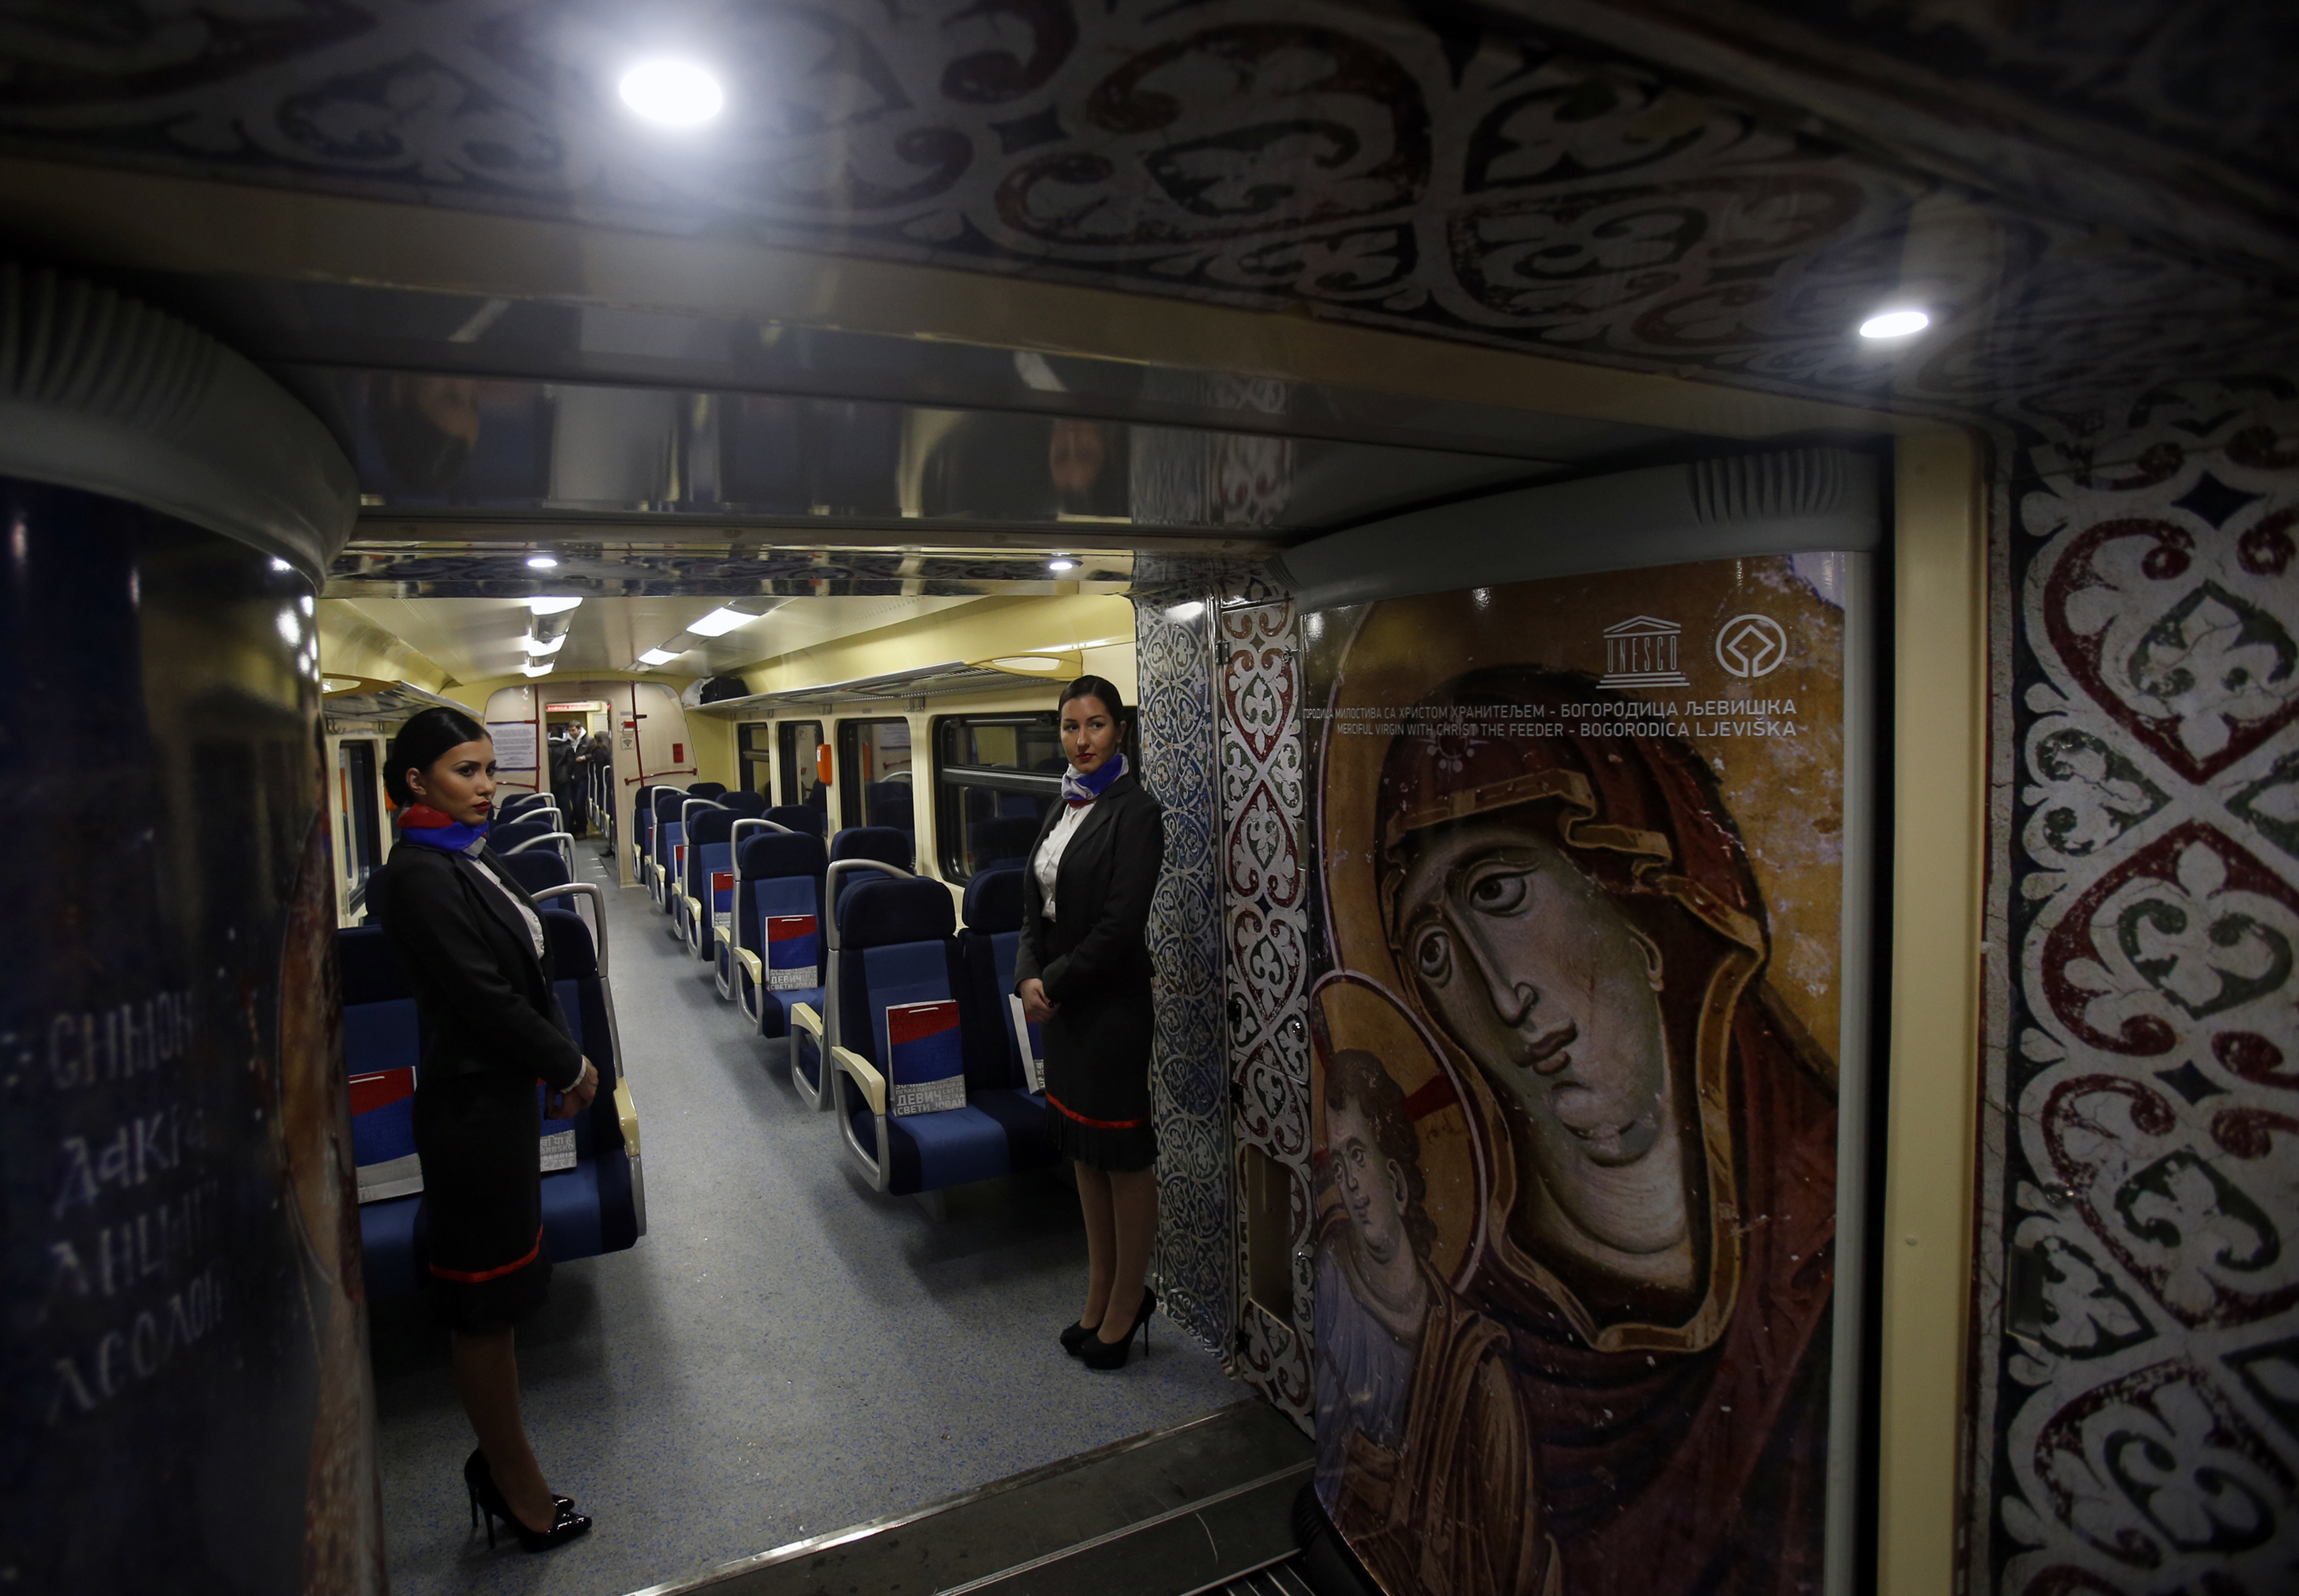 Изпратихме влак, не танк, коментира сръбският премиер Александър Вучич